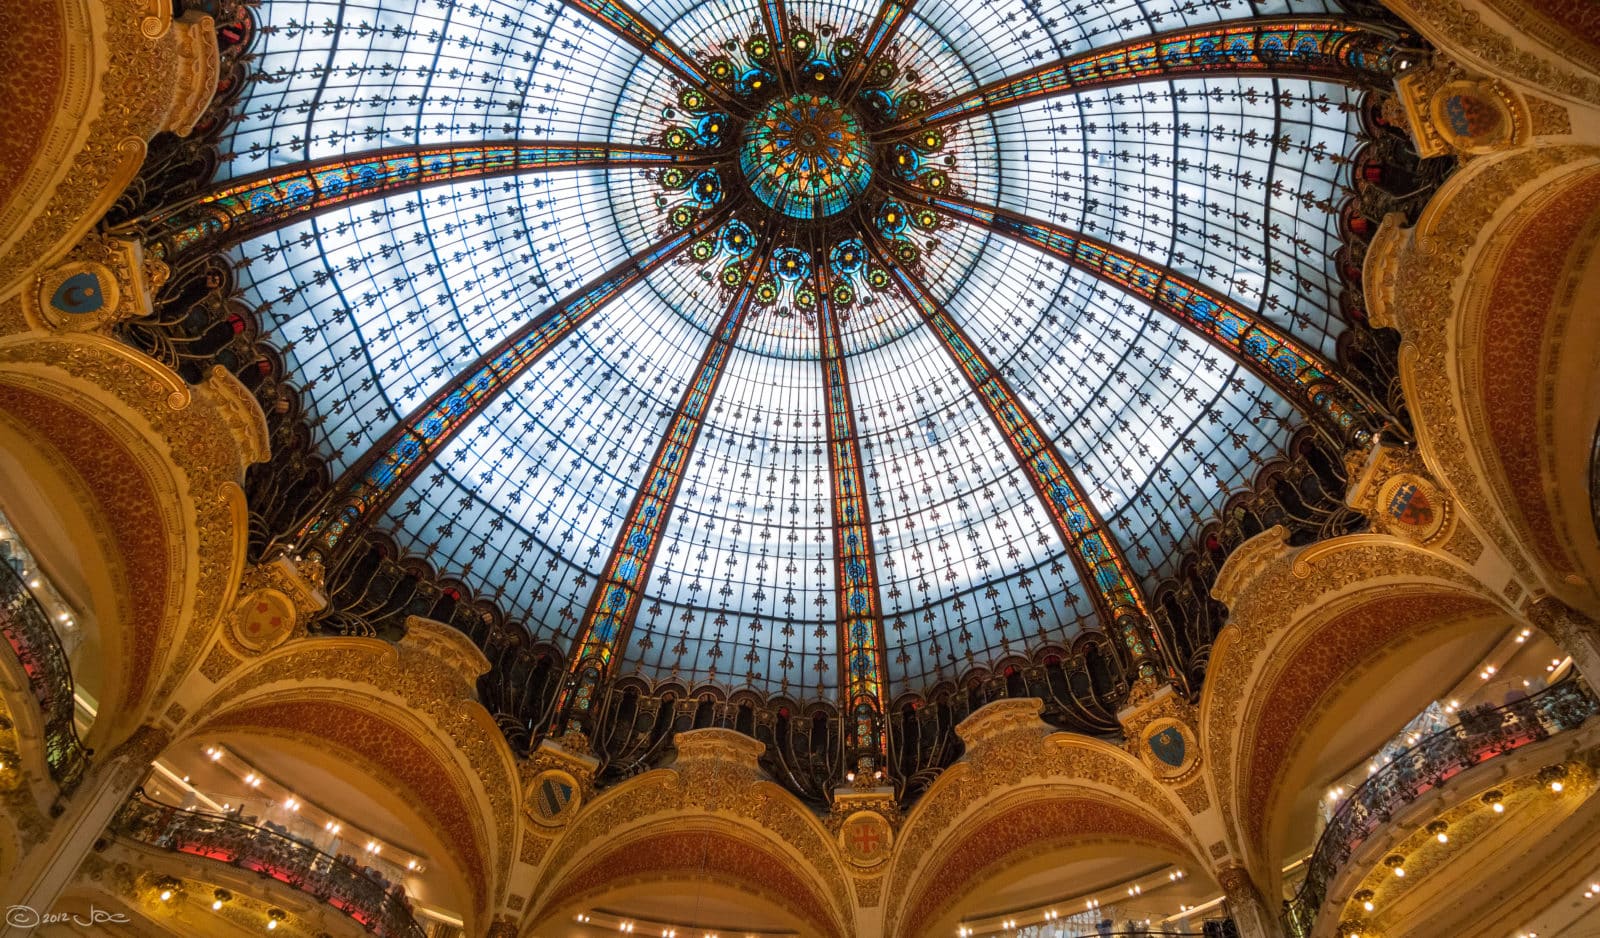 Parisian department store Galeries Lafayette Haussmann launches